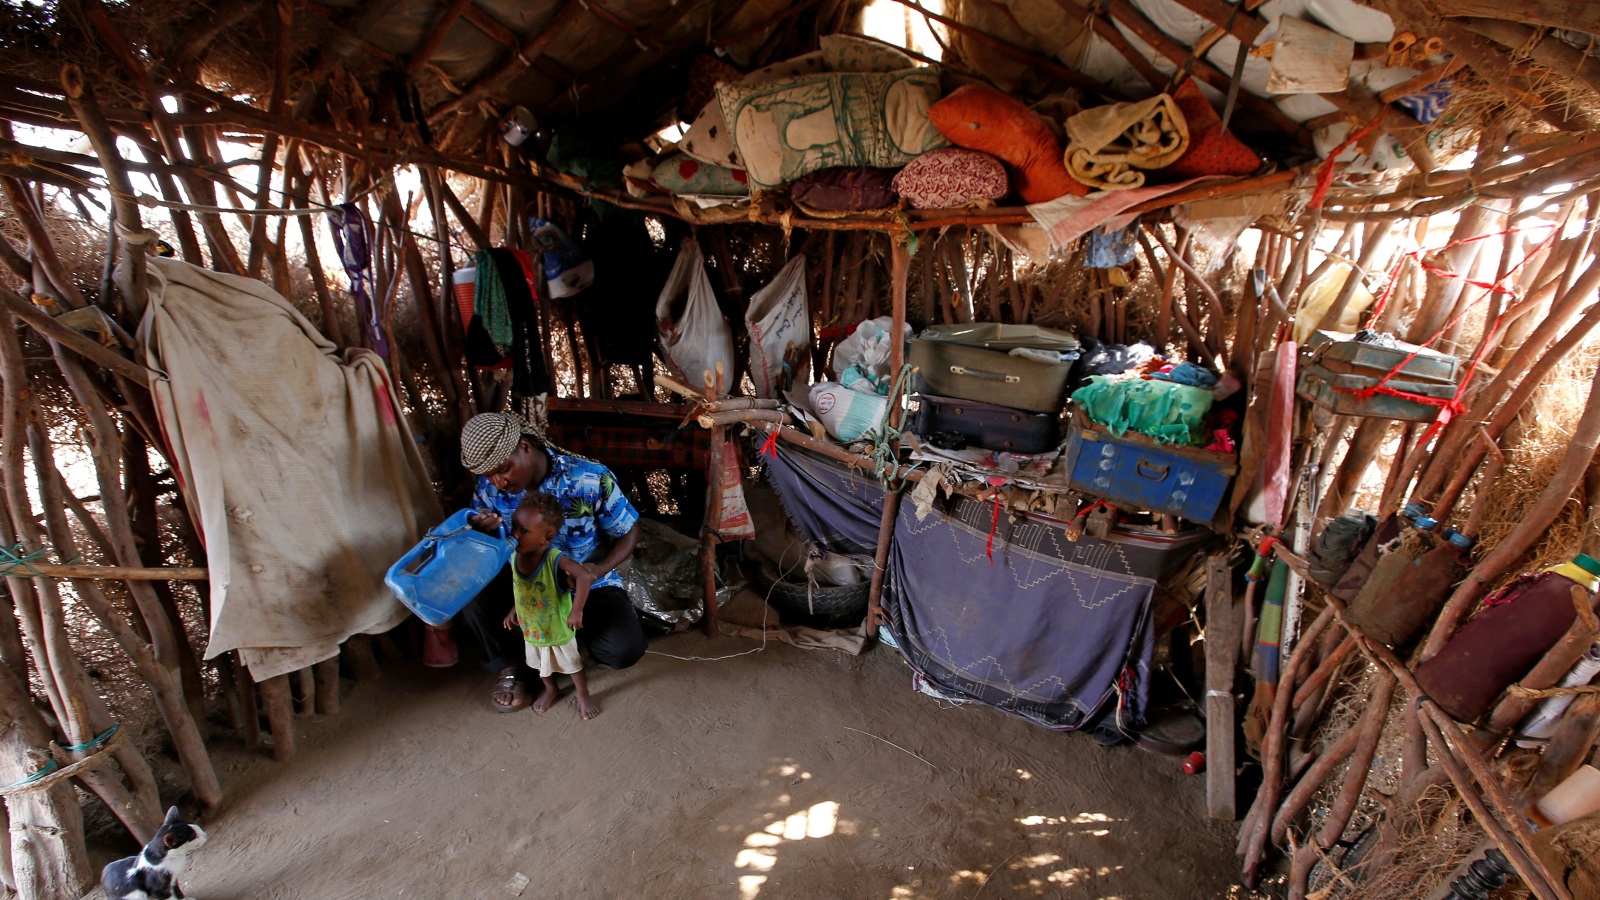 ‪ظروف معيشية صعبة بضواحي مدينة الحديدة اليمنية‬ ظروف معيشية صعبة بضواحي مدينة الحديدة اليمنية (رويترز)